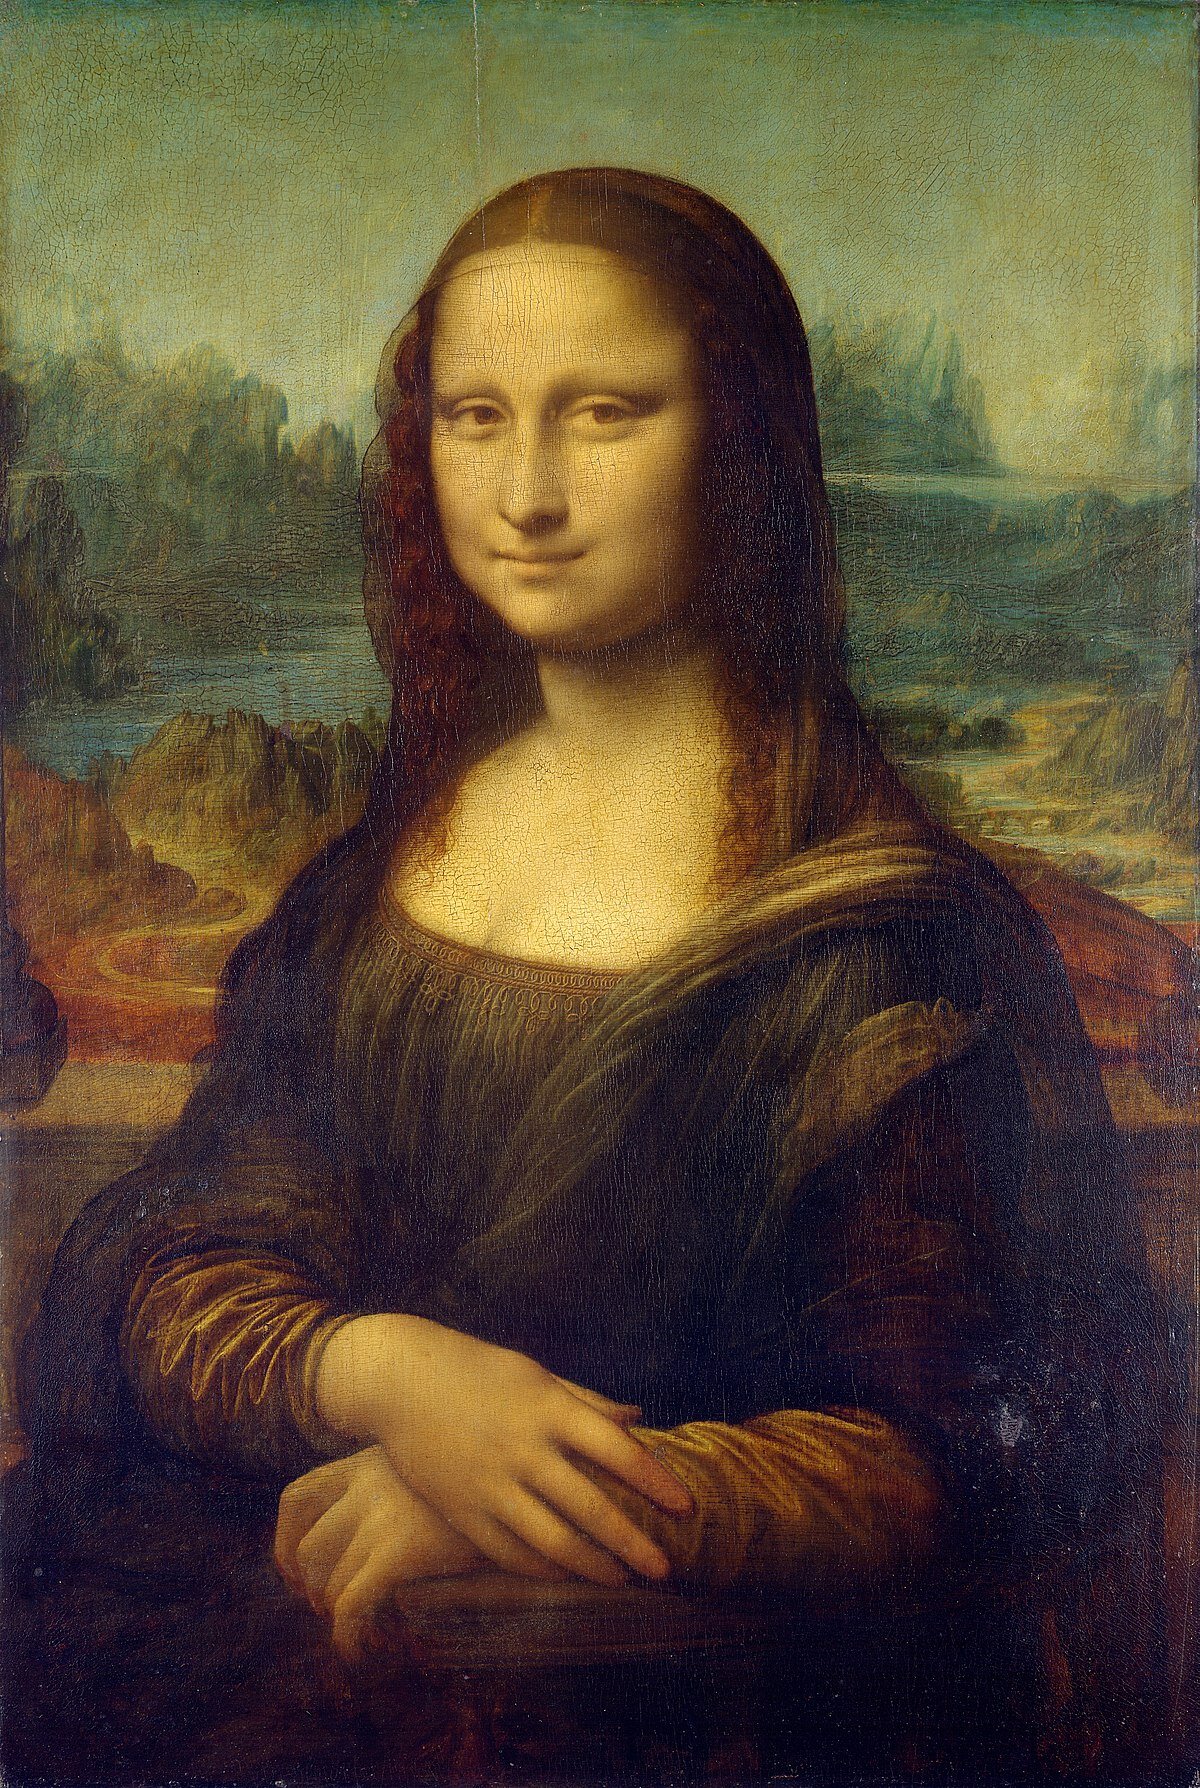 Leonardo da Vinci, Mona Lisa, c. 1503 and after